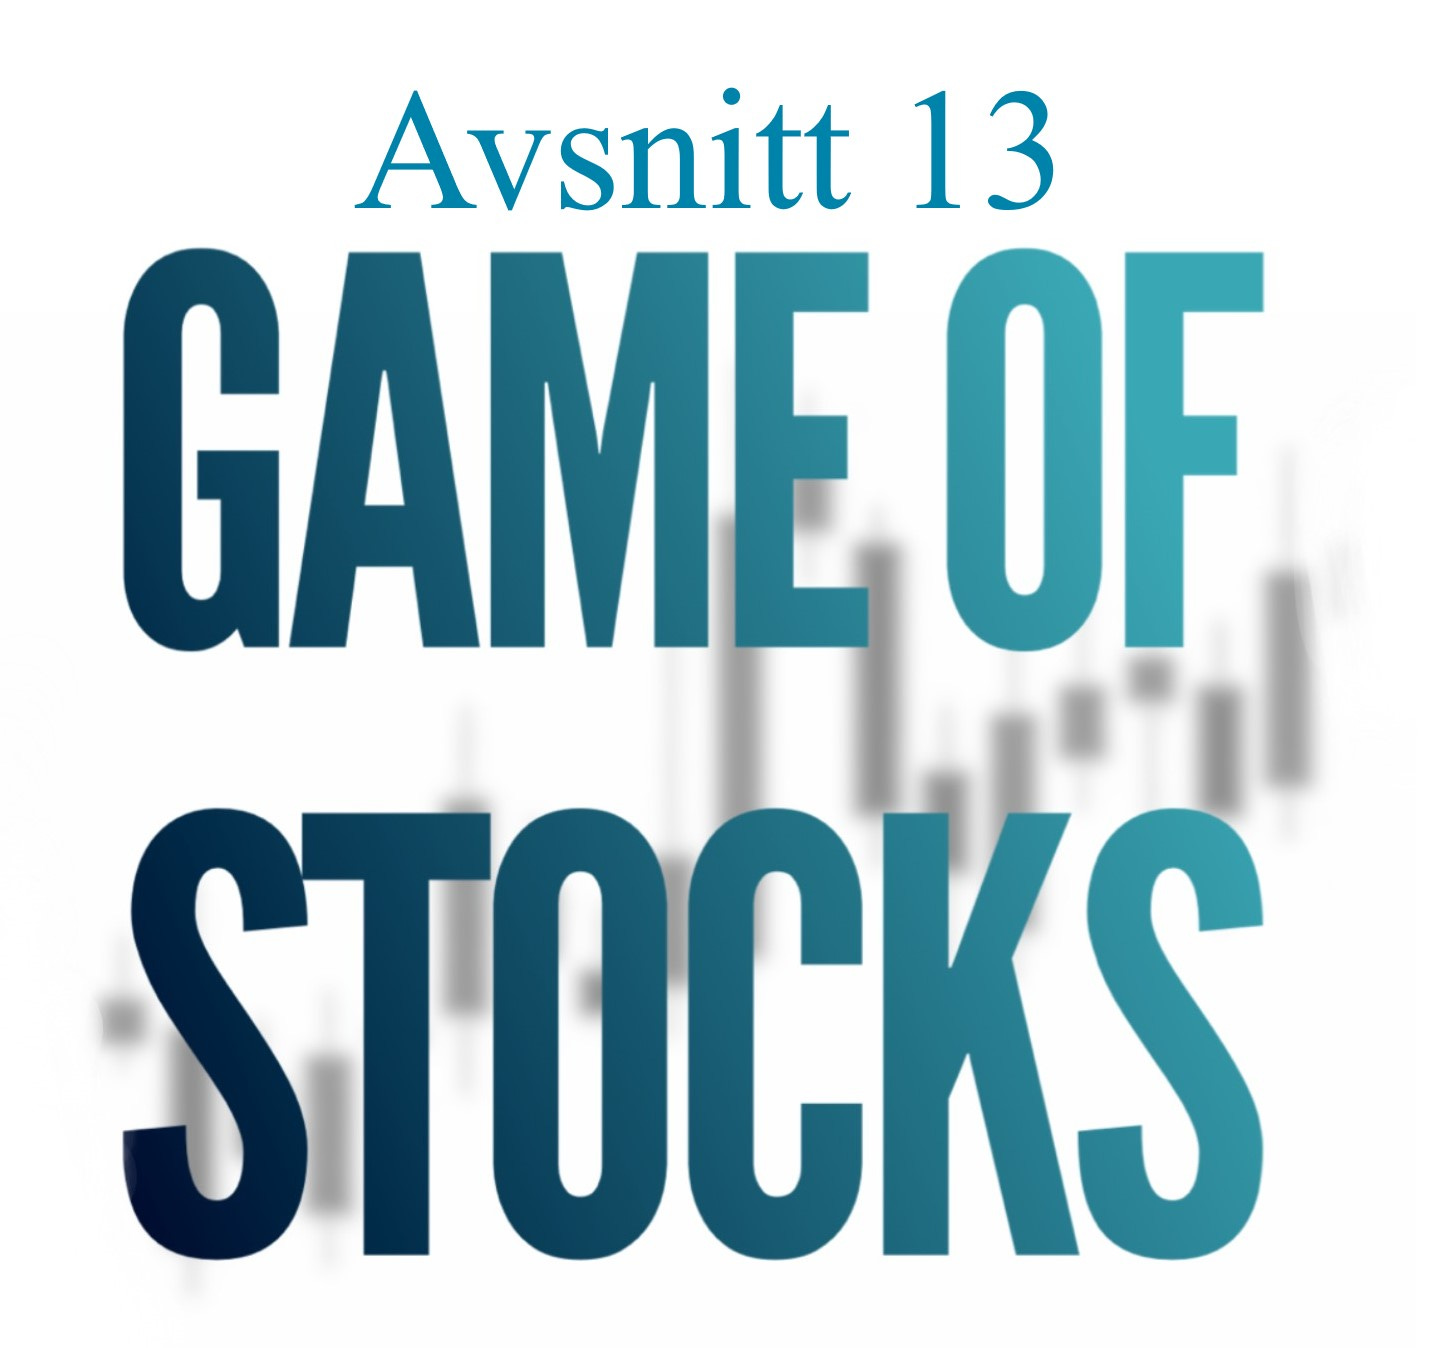 Avsnitt 13 Game of stocks